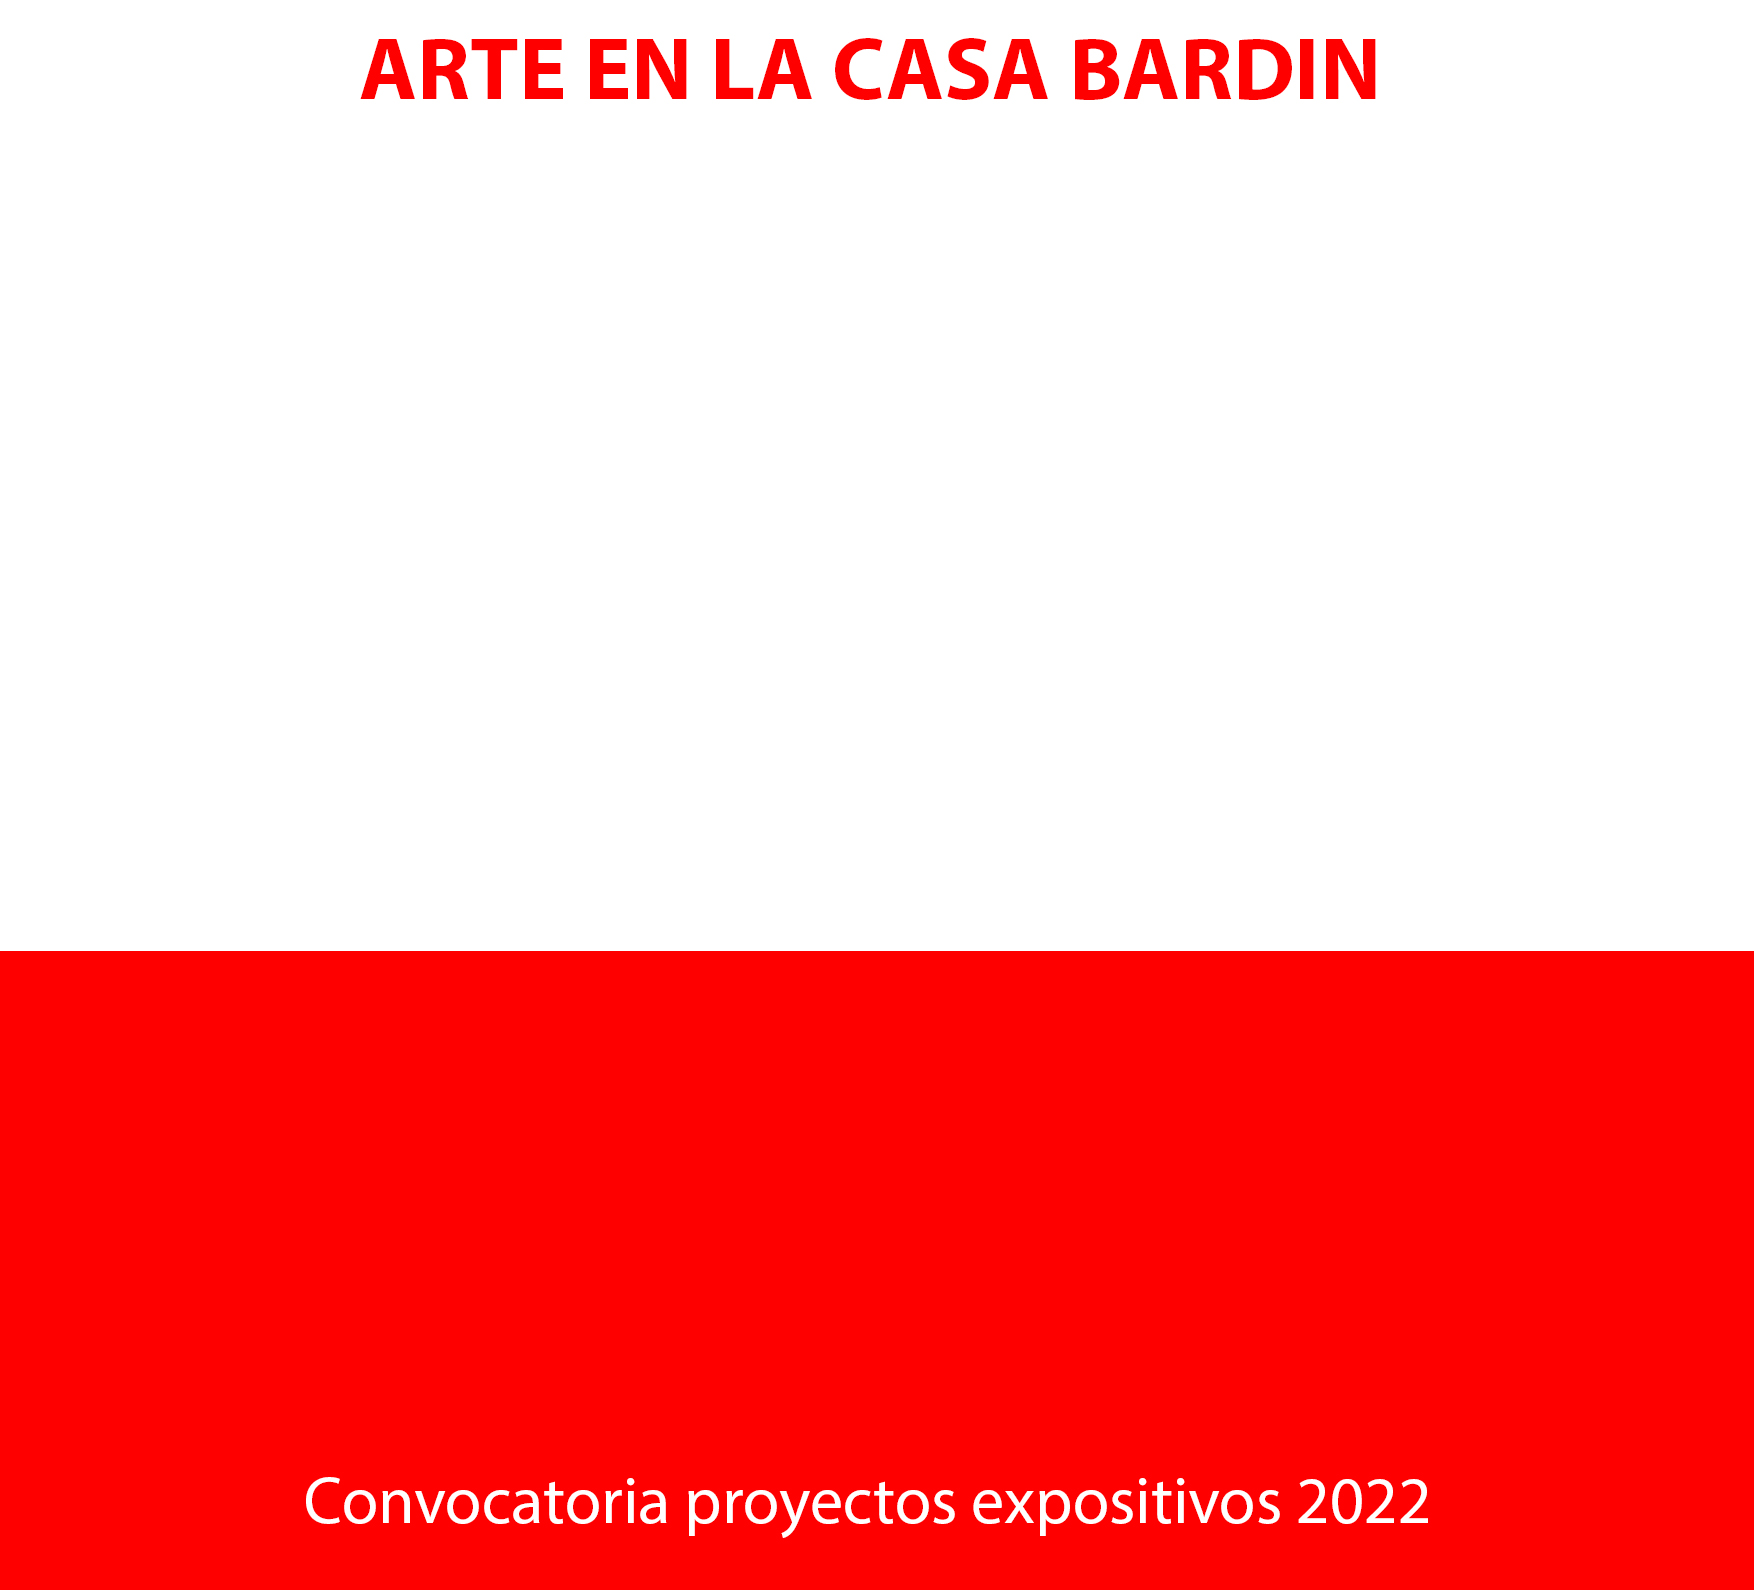 El Instituto Alicantino Juan Gil-Albert abre el plazo para la V edición del concurso Arte en la Casa Bardín